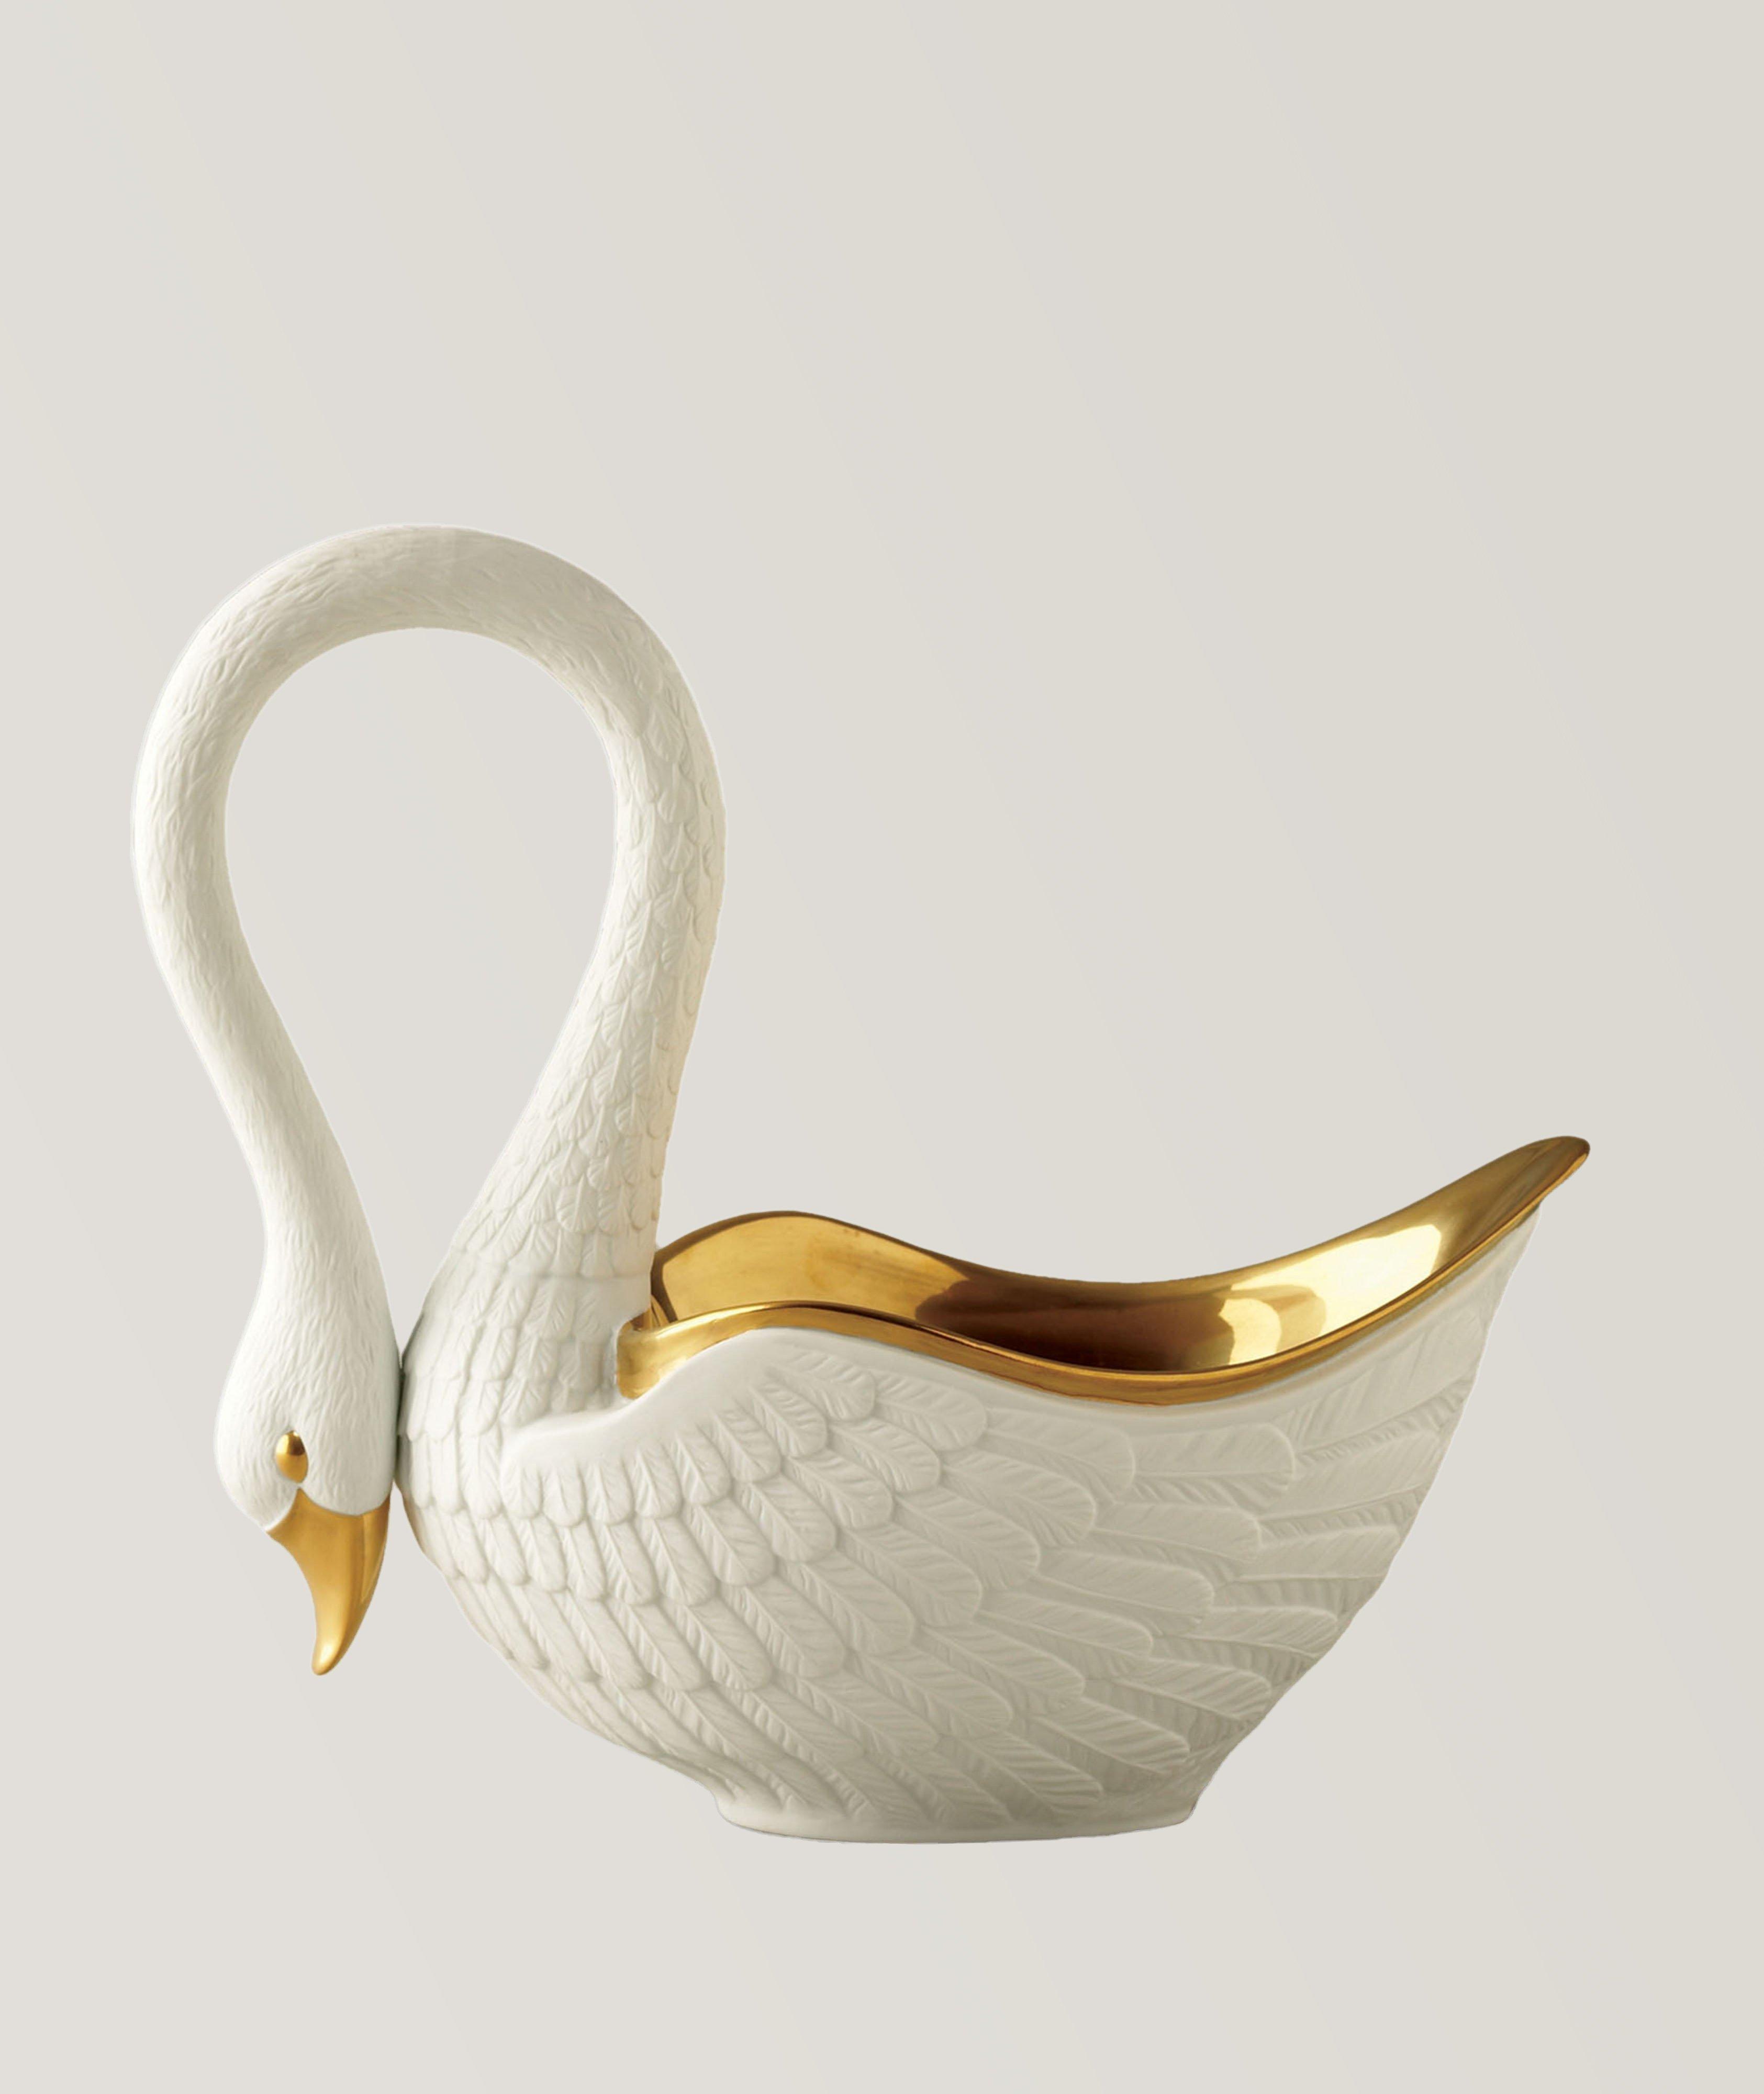 Medium Swan Bowl White image 0